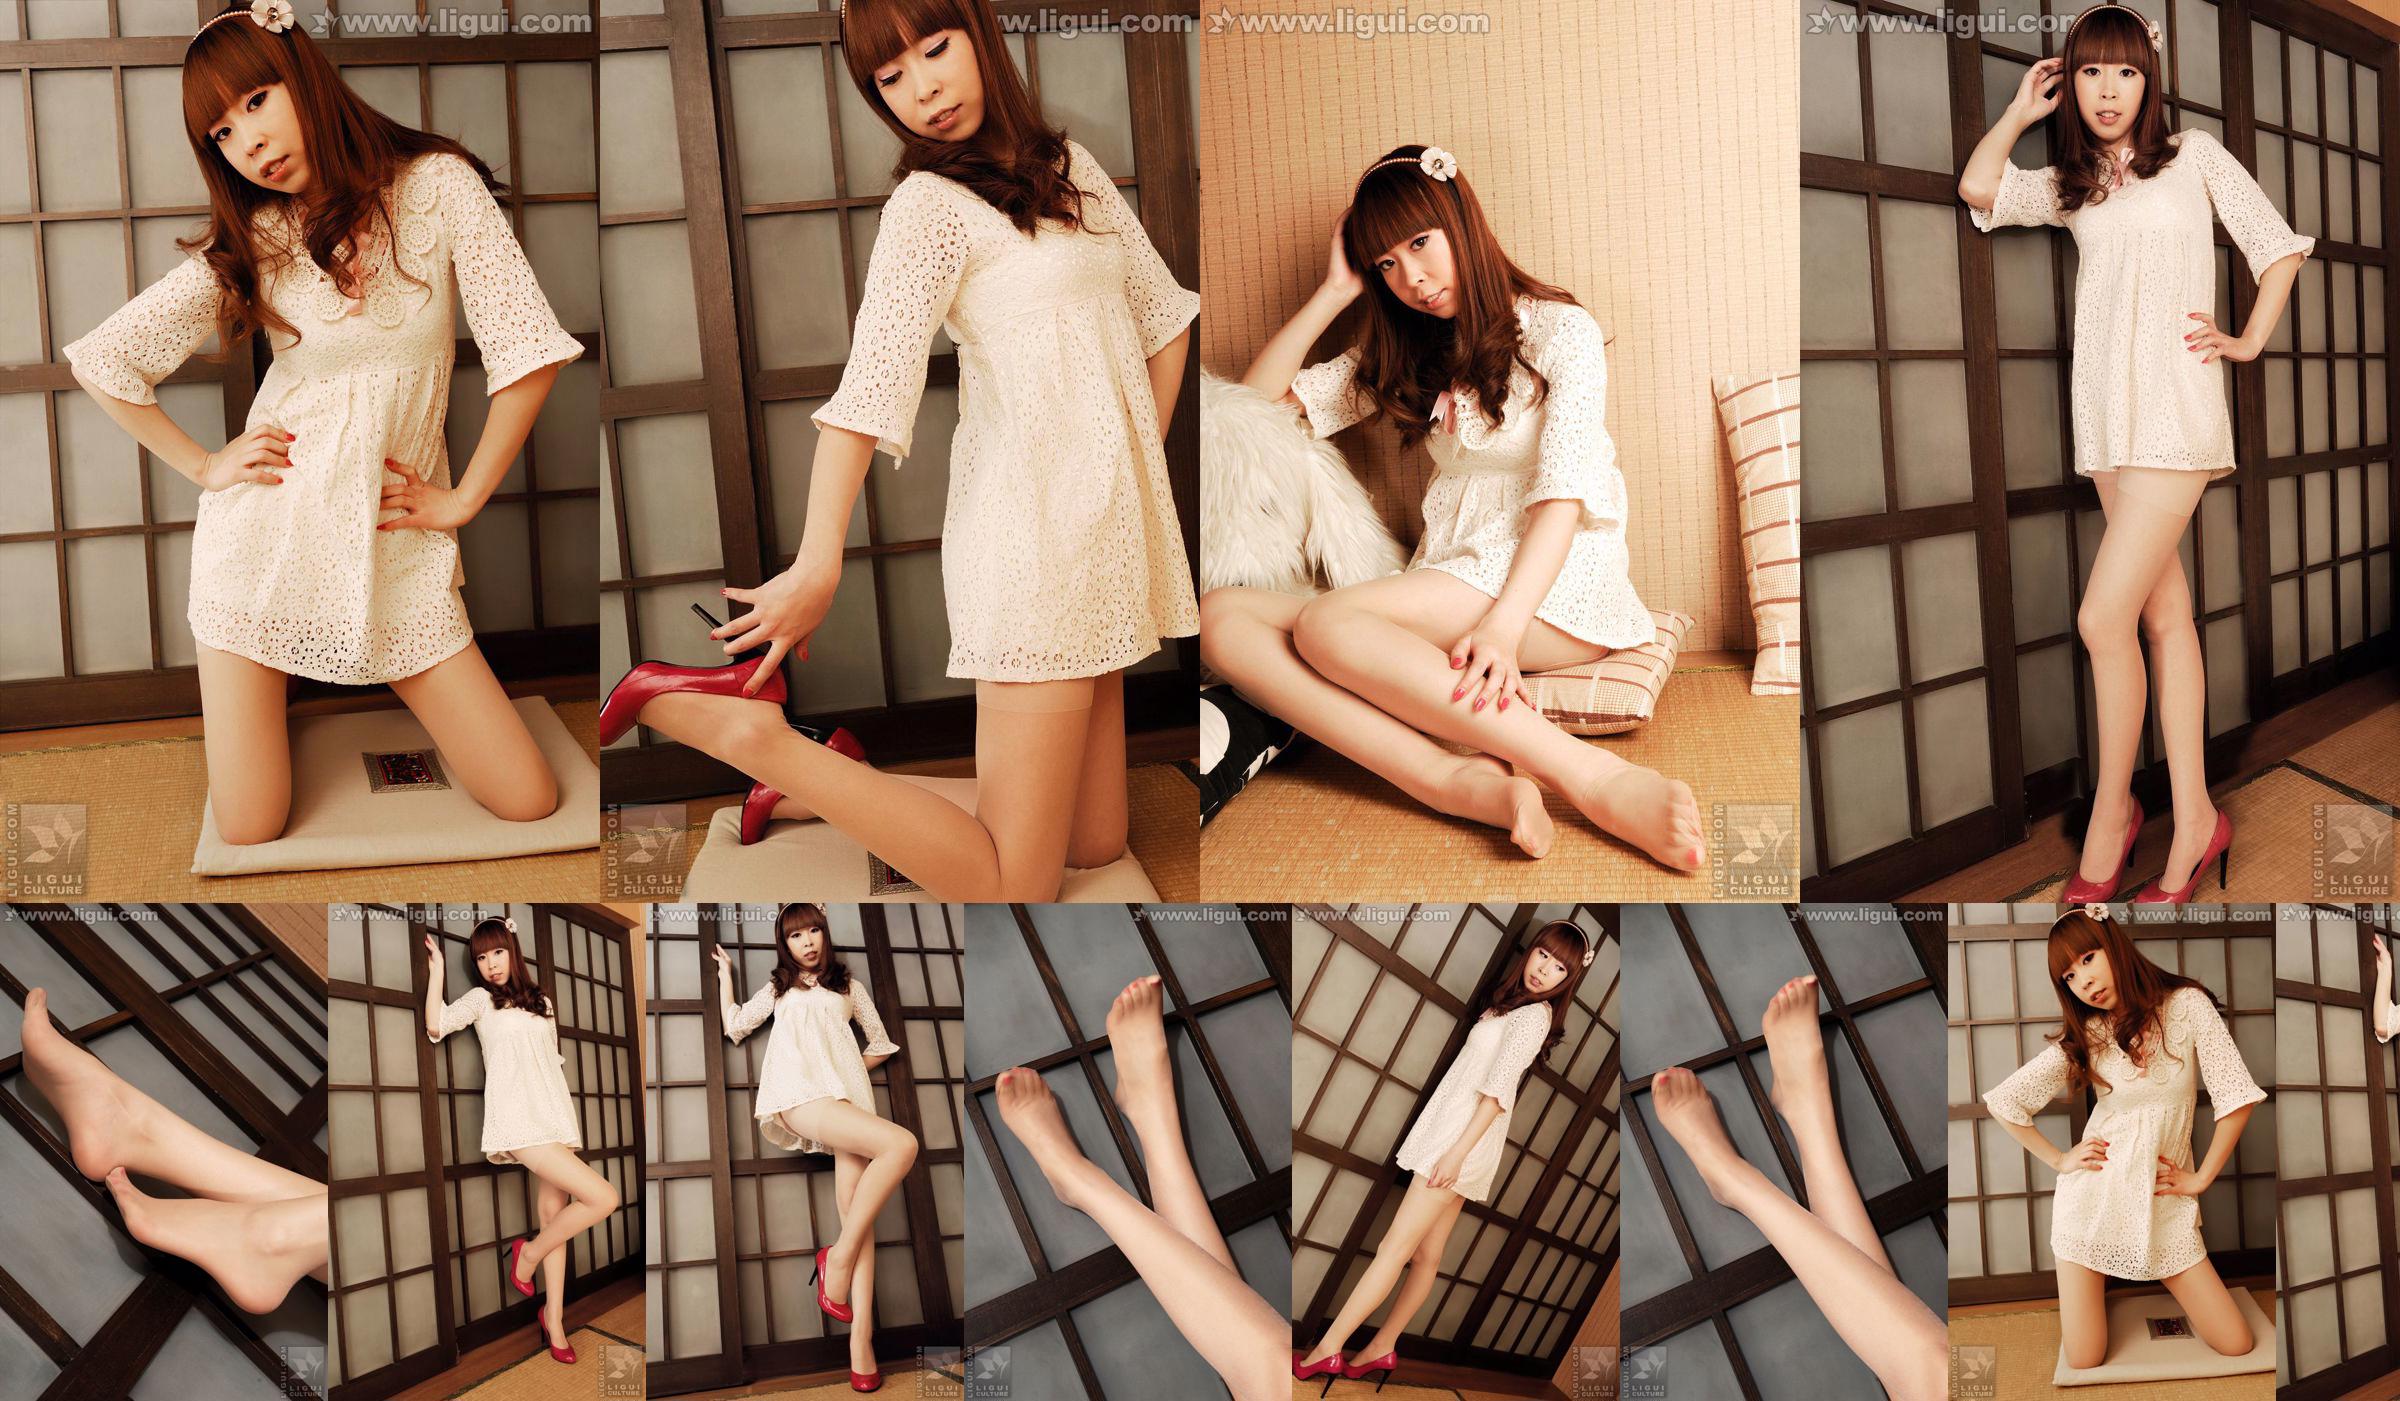 นางแบบ Vikcy "The Temptation of Japanese Style" [丽柜 LiGui] รูปถ่ายขาสวยและเท้าหยก No.1b818d หน้า 6